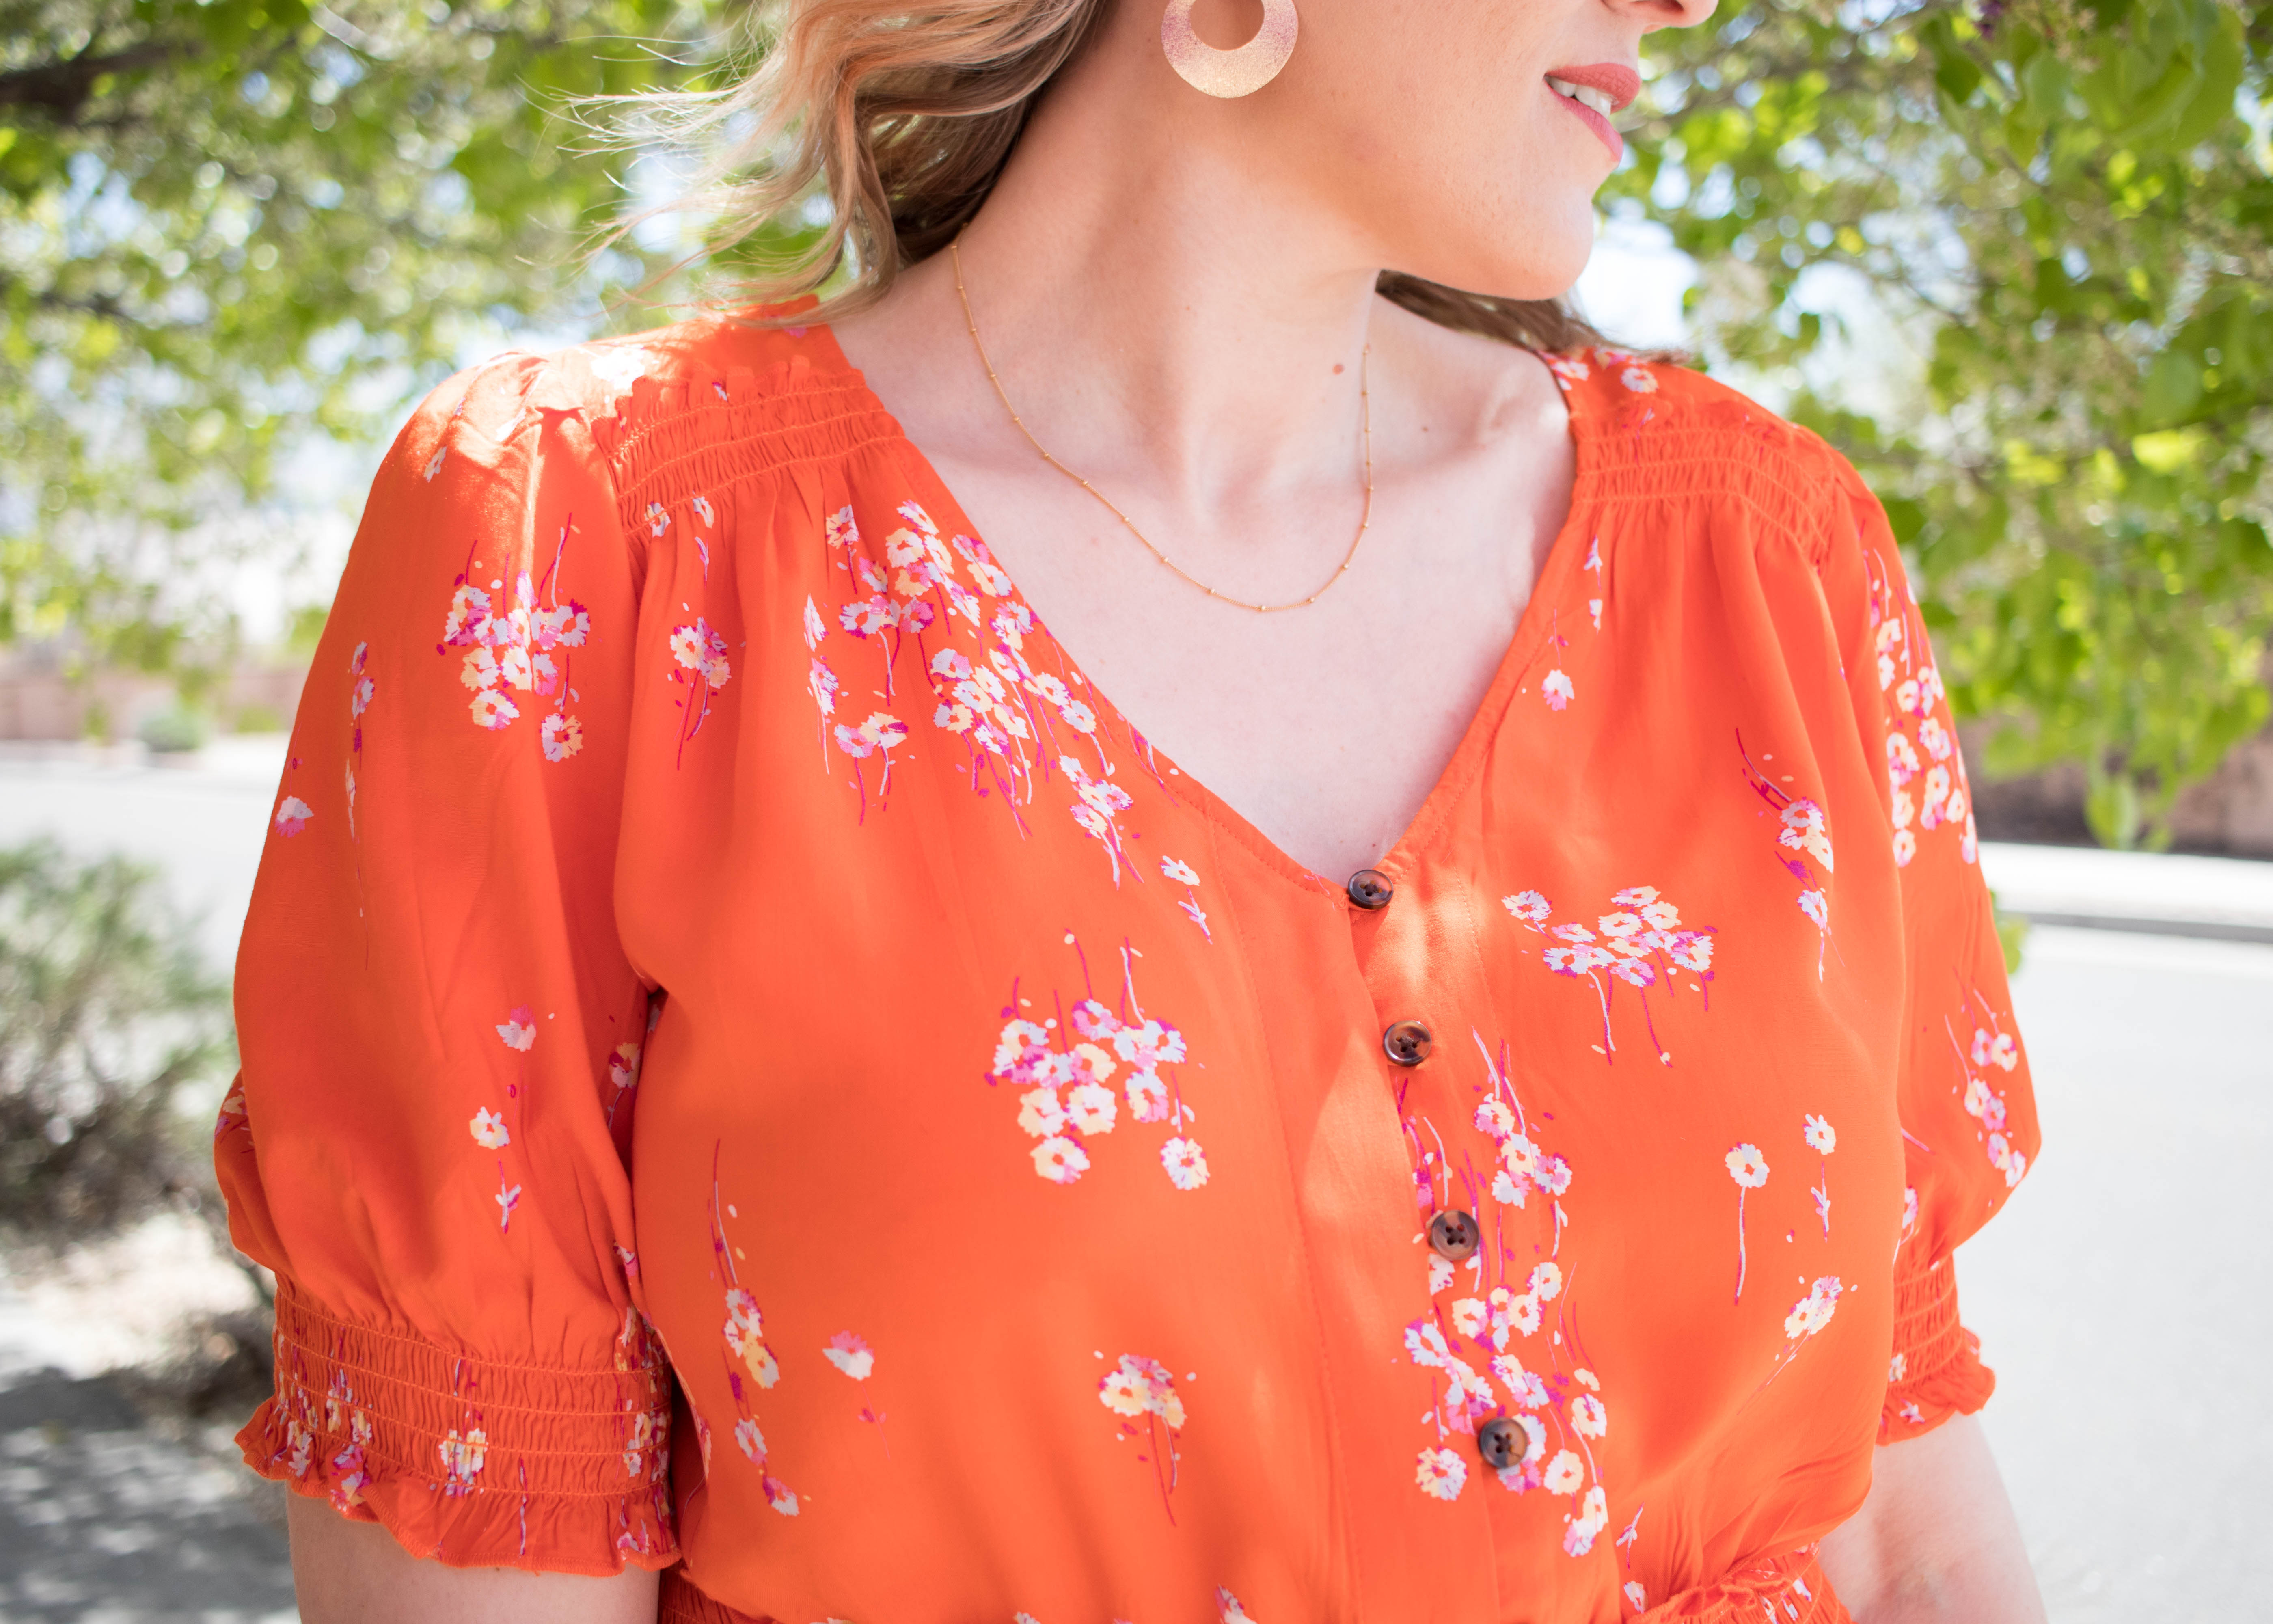 orange floral jumpsuit jcpenney #affordablefashion #jumpsuit #floraljumpsuit